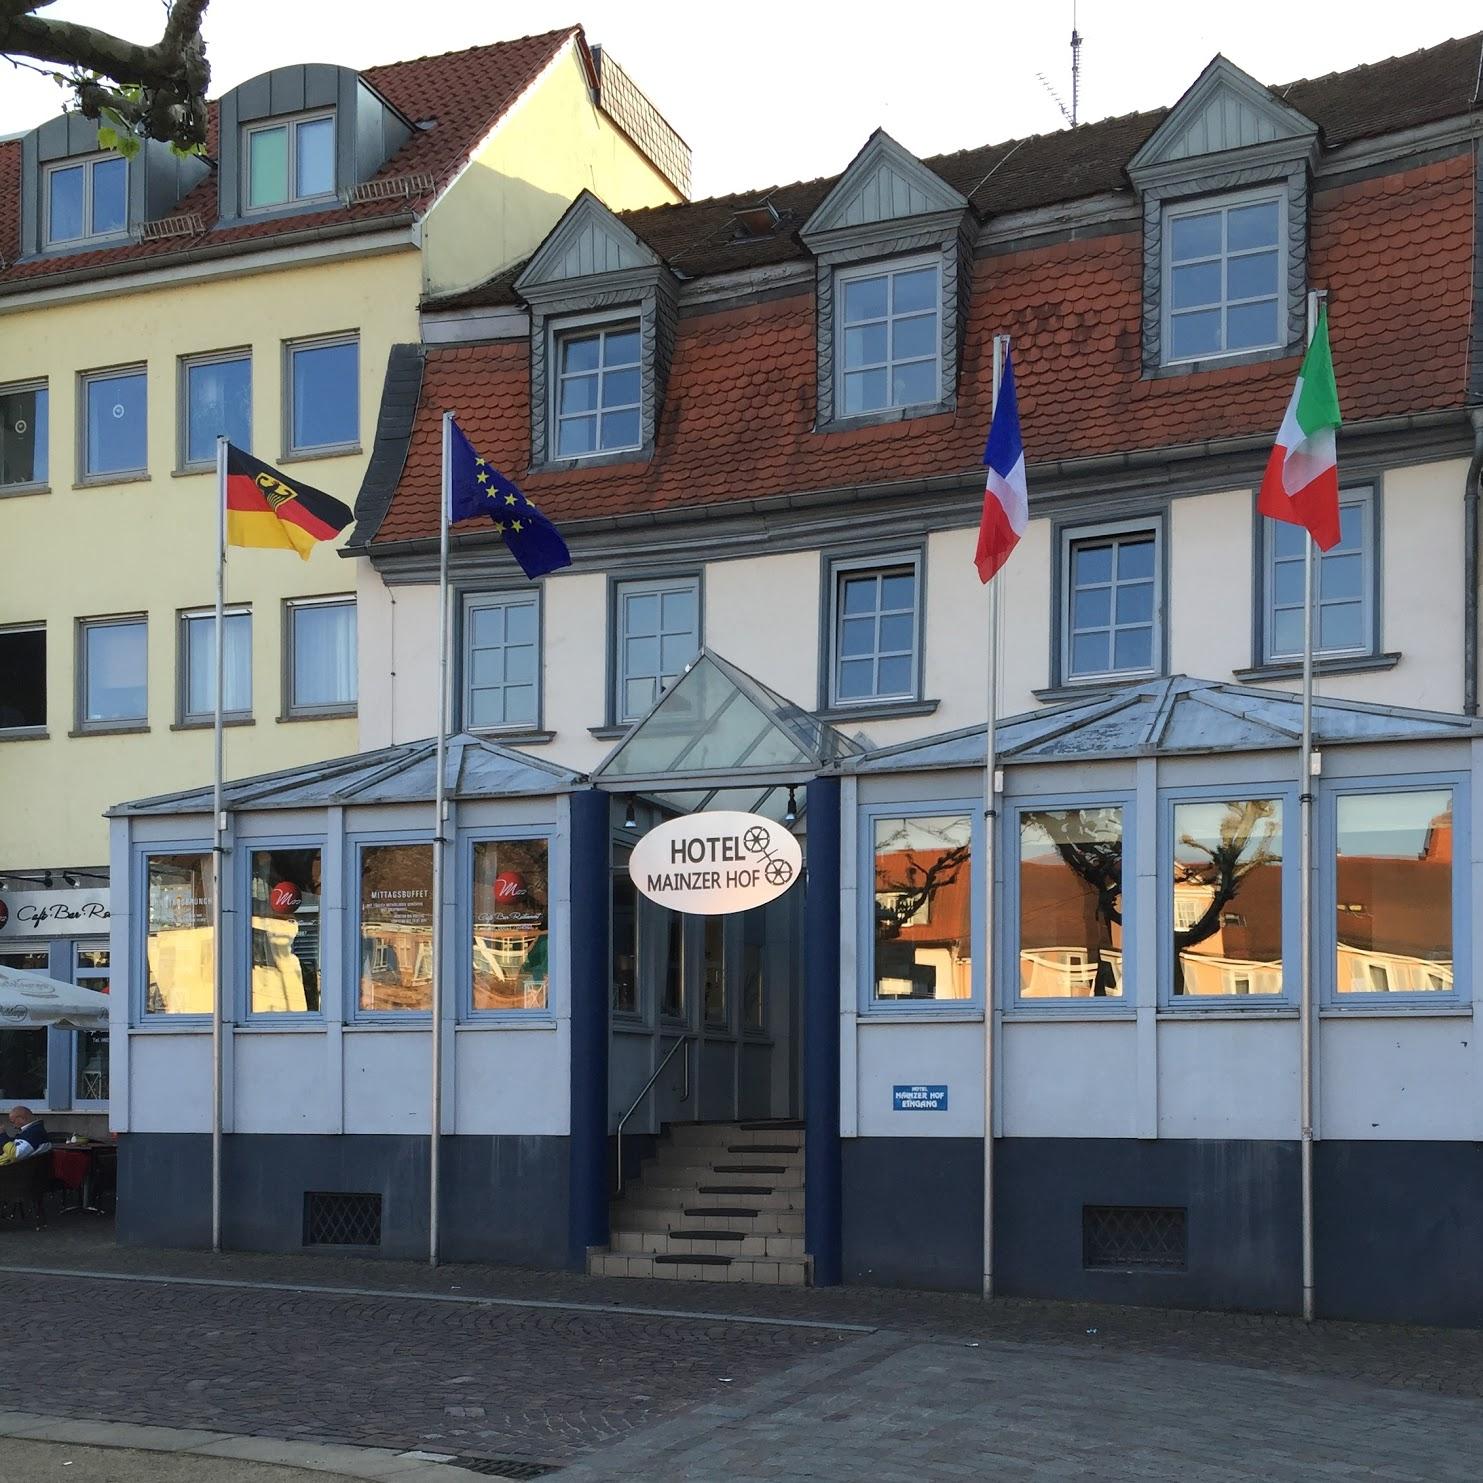 Restaurant "Hotel Mainzer Hof GmbH" in Dieburg